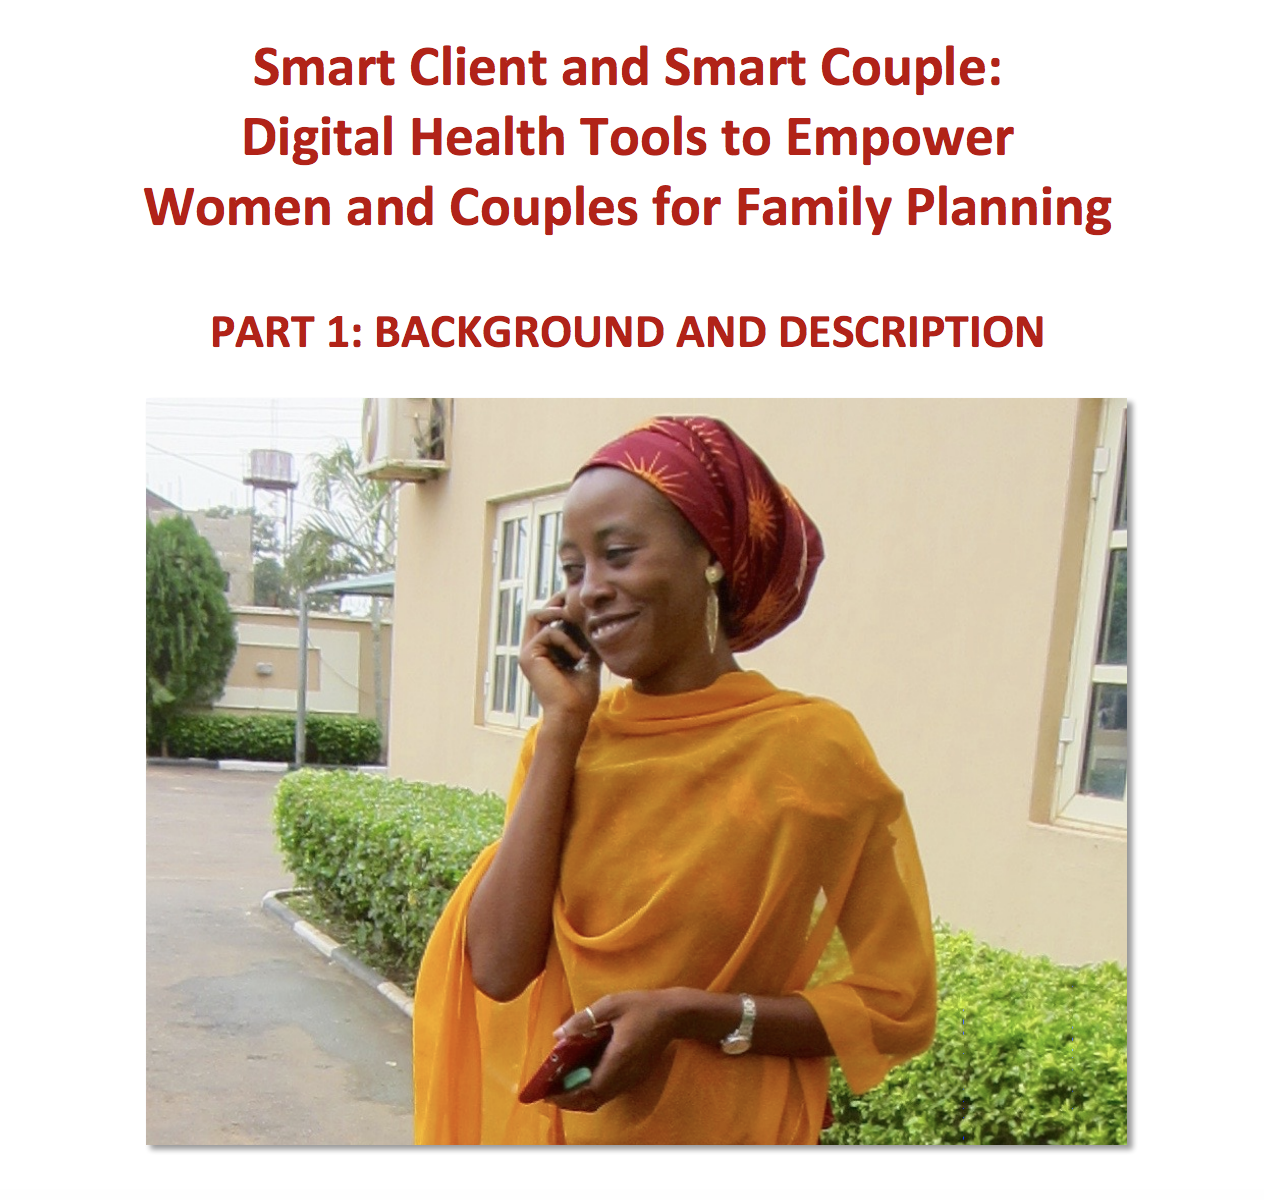 स्मार्ट ग्राहक और स्मार्ट जोड़े: डिजिटल स्वास्थ्य उपकरण परिवार नियोजन के लिए महिलाओं और जोड़ों को सशक्त बनाने के लिए